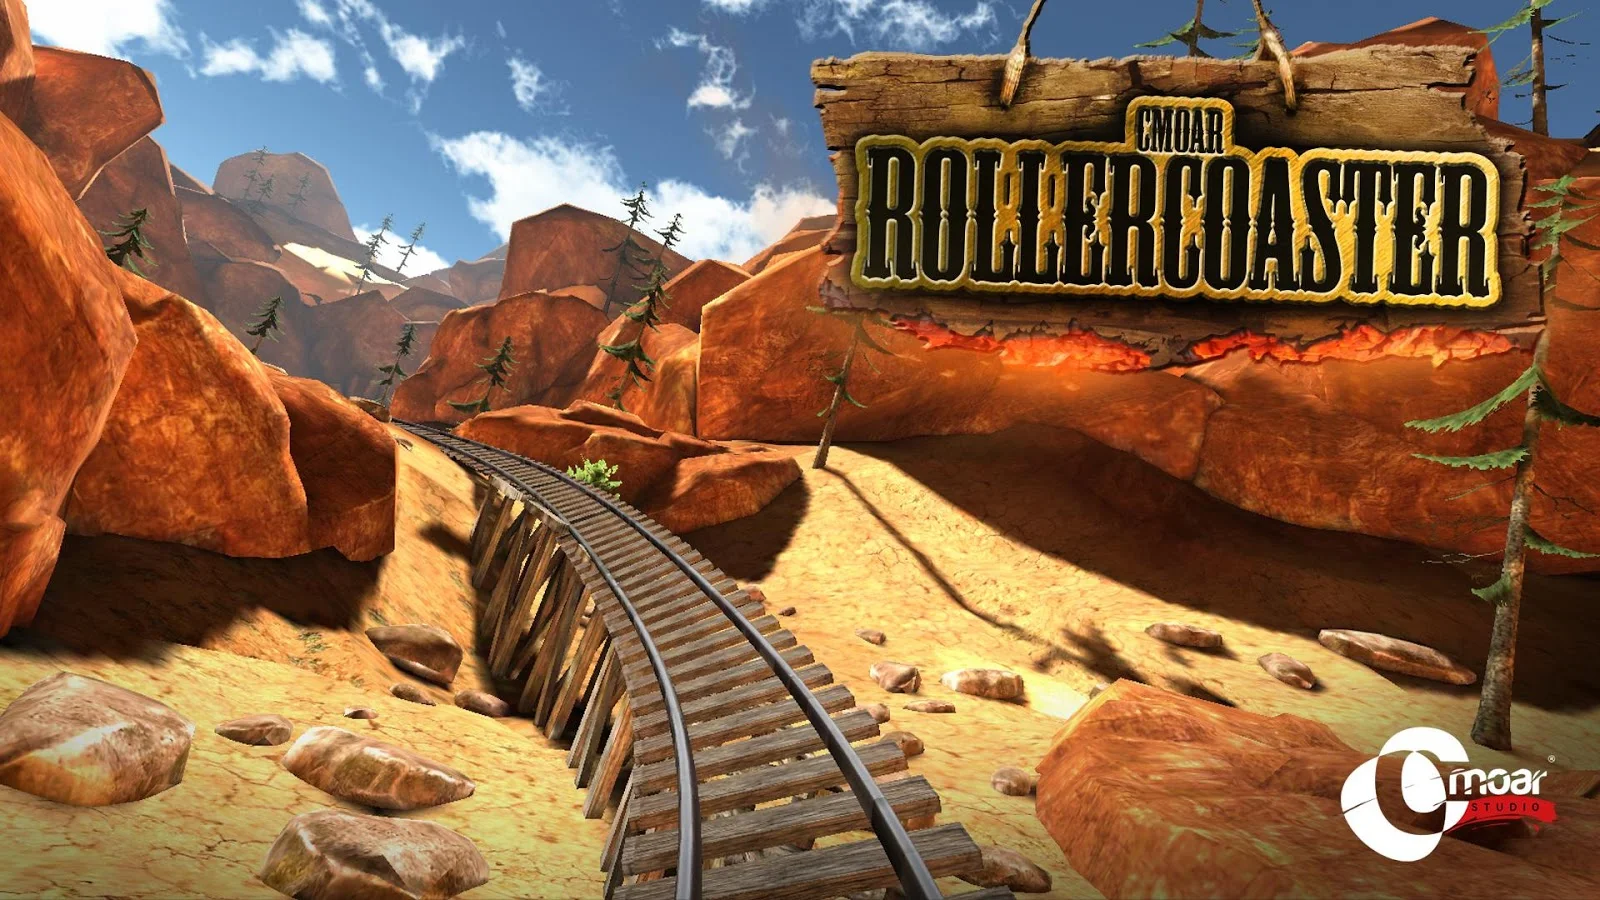  Cmoar Roller Coaster VR- screenshot 